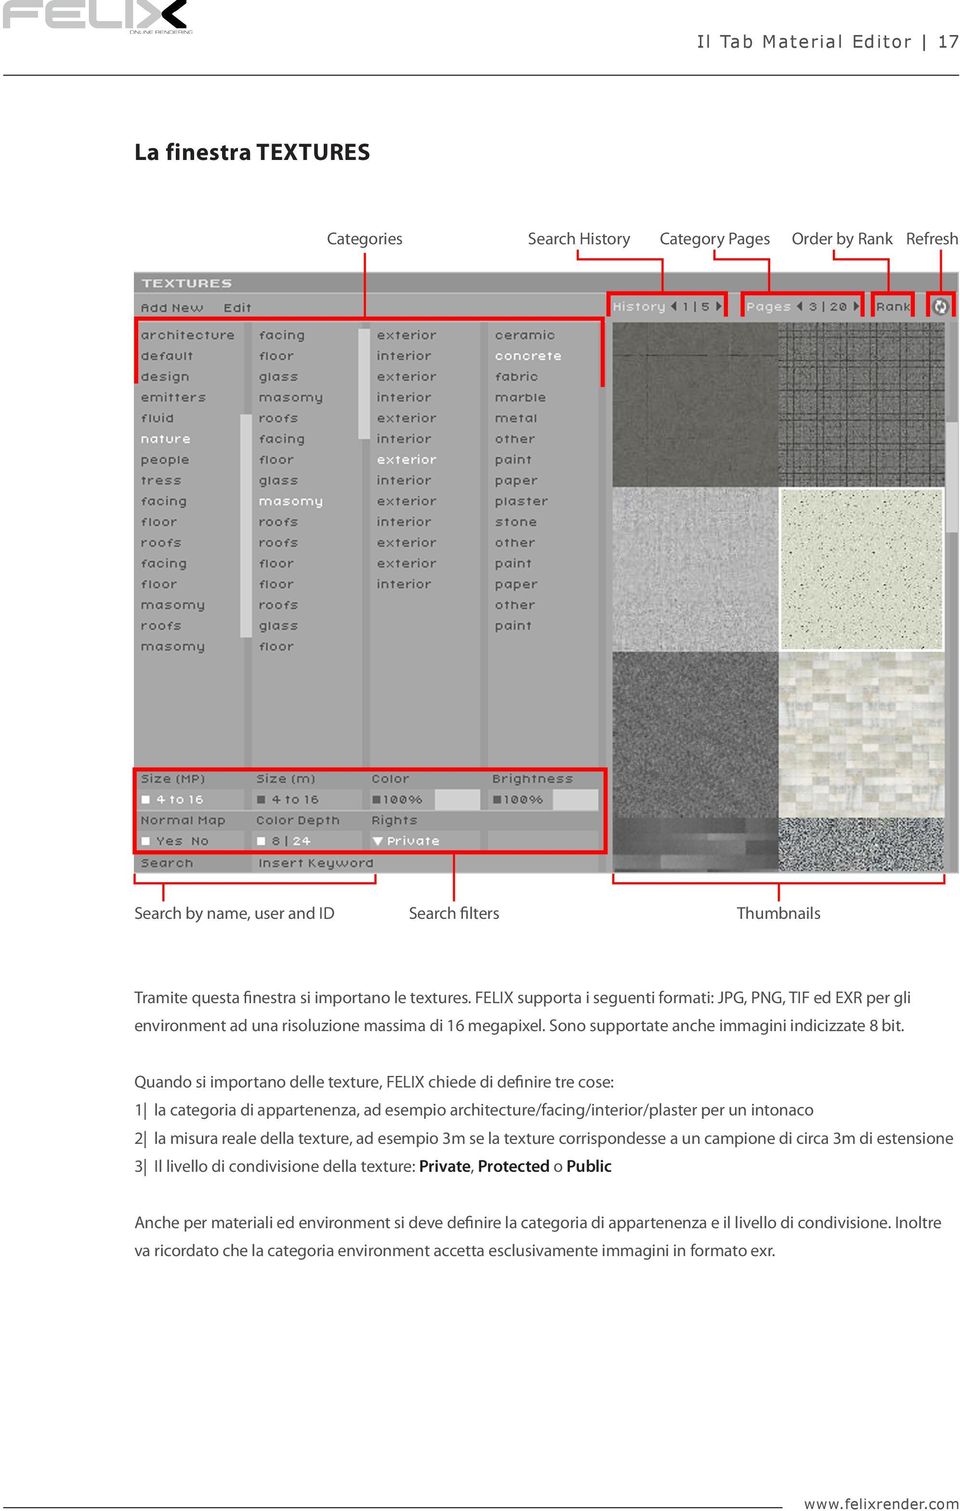 Quando si importano delle texture, FELIX chiede di definire tre cose: 1 la categoria di appartenenza, ad esempio architecture/facing/interior/plaster per un intonaco 2 la misura reale della texture,